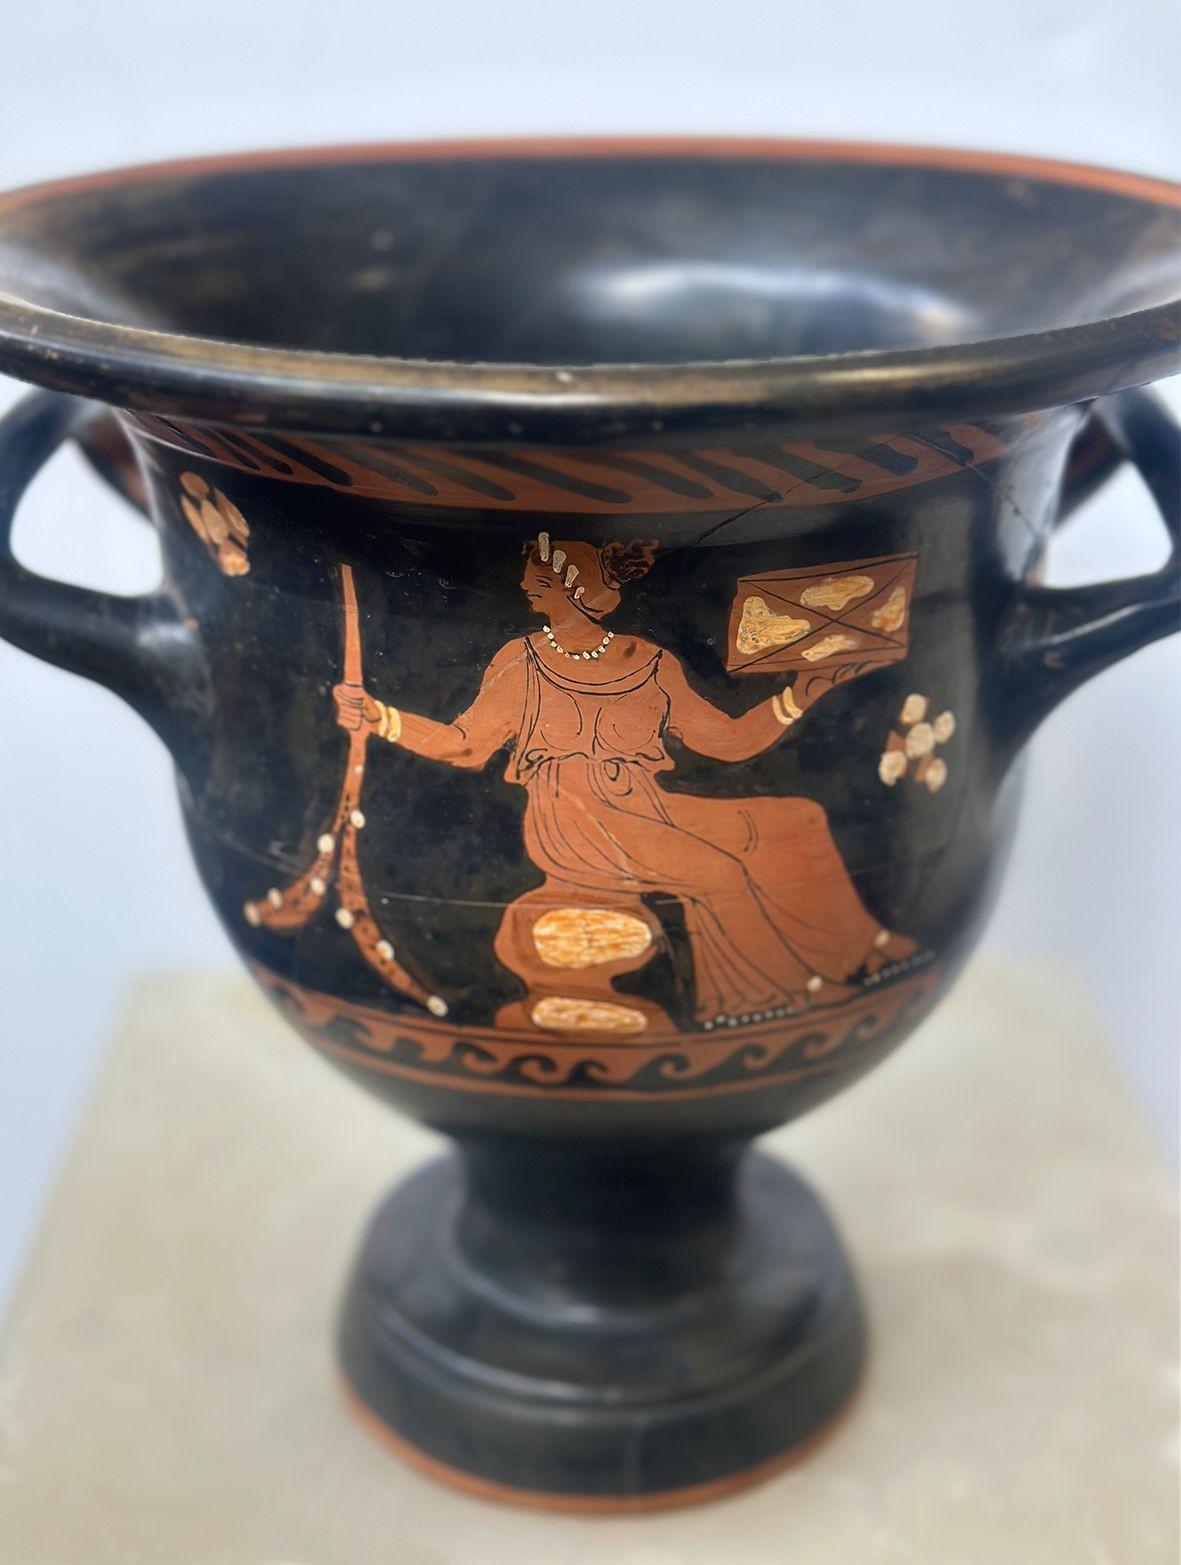 Seltener antiker apulischer Iliupersis-Keramik-Glockenkrater aus der Zeit um 350 v. Chr. mit schönen traditionellen Figuren. Die eine Seite zeigt ein sitzendes Mädchen in einem ärmellosen Gewand, die andere Seite eine abstrakte Darstellung einer